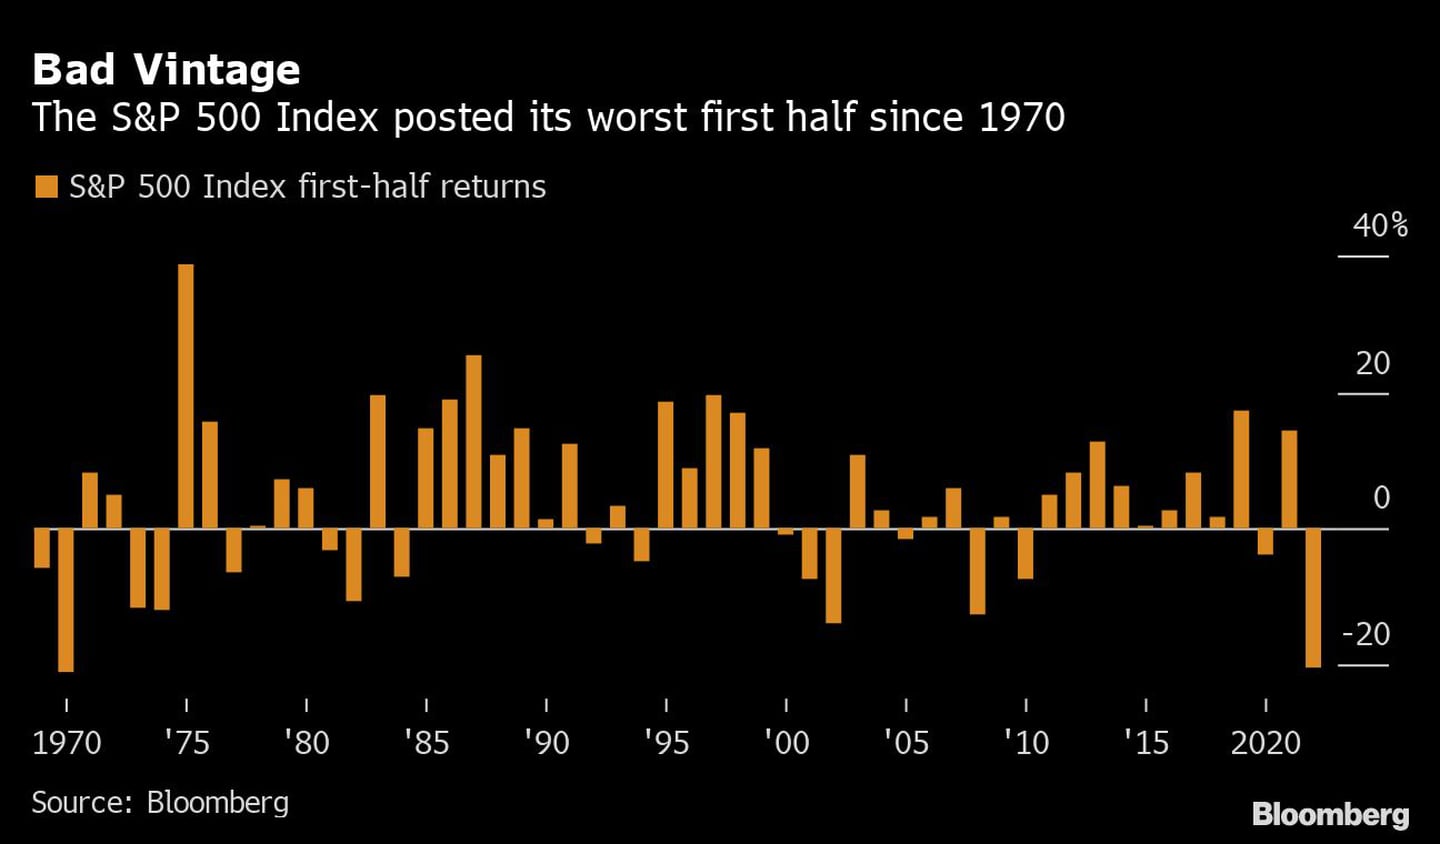 El índice S&P 500 registra su peor primer semestre desde 1970dfd